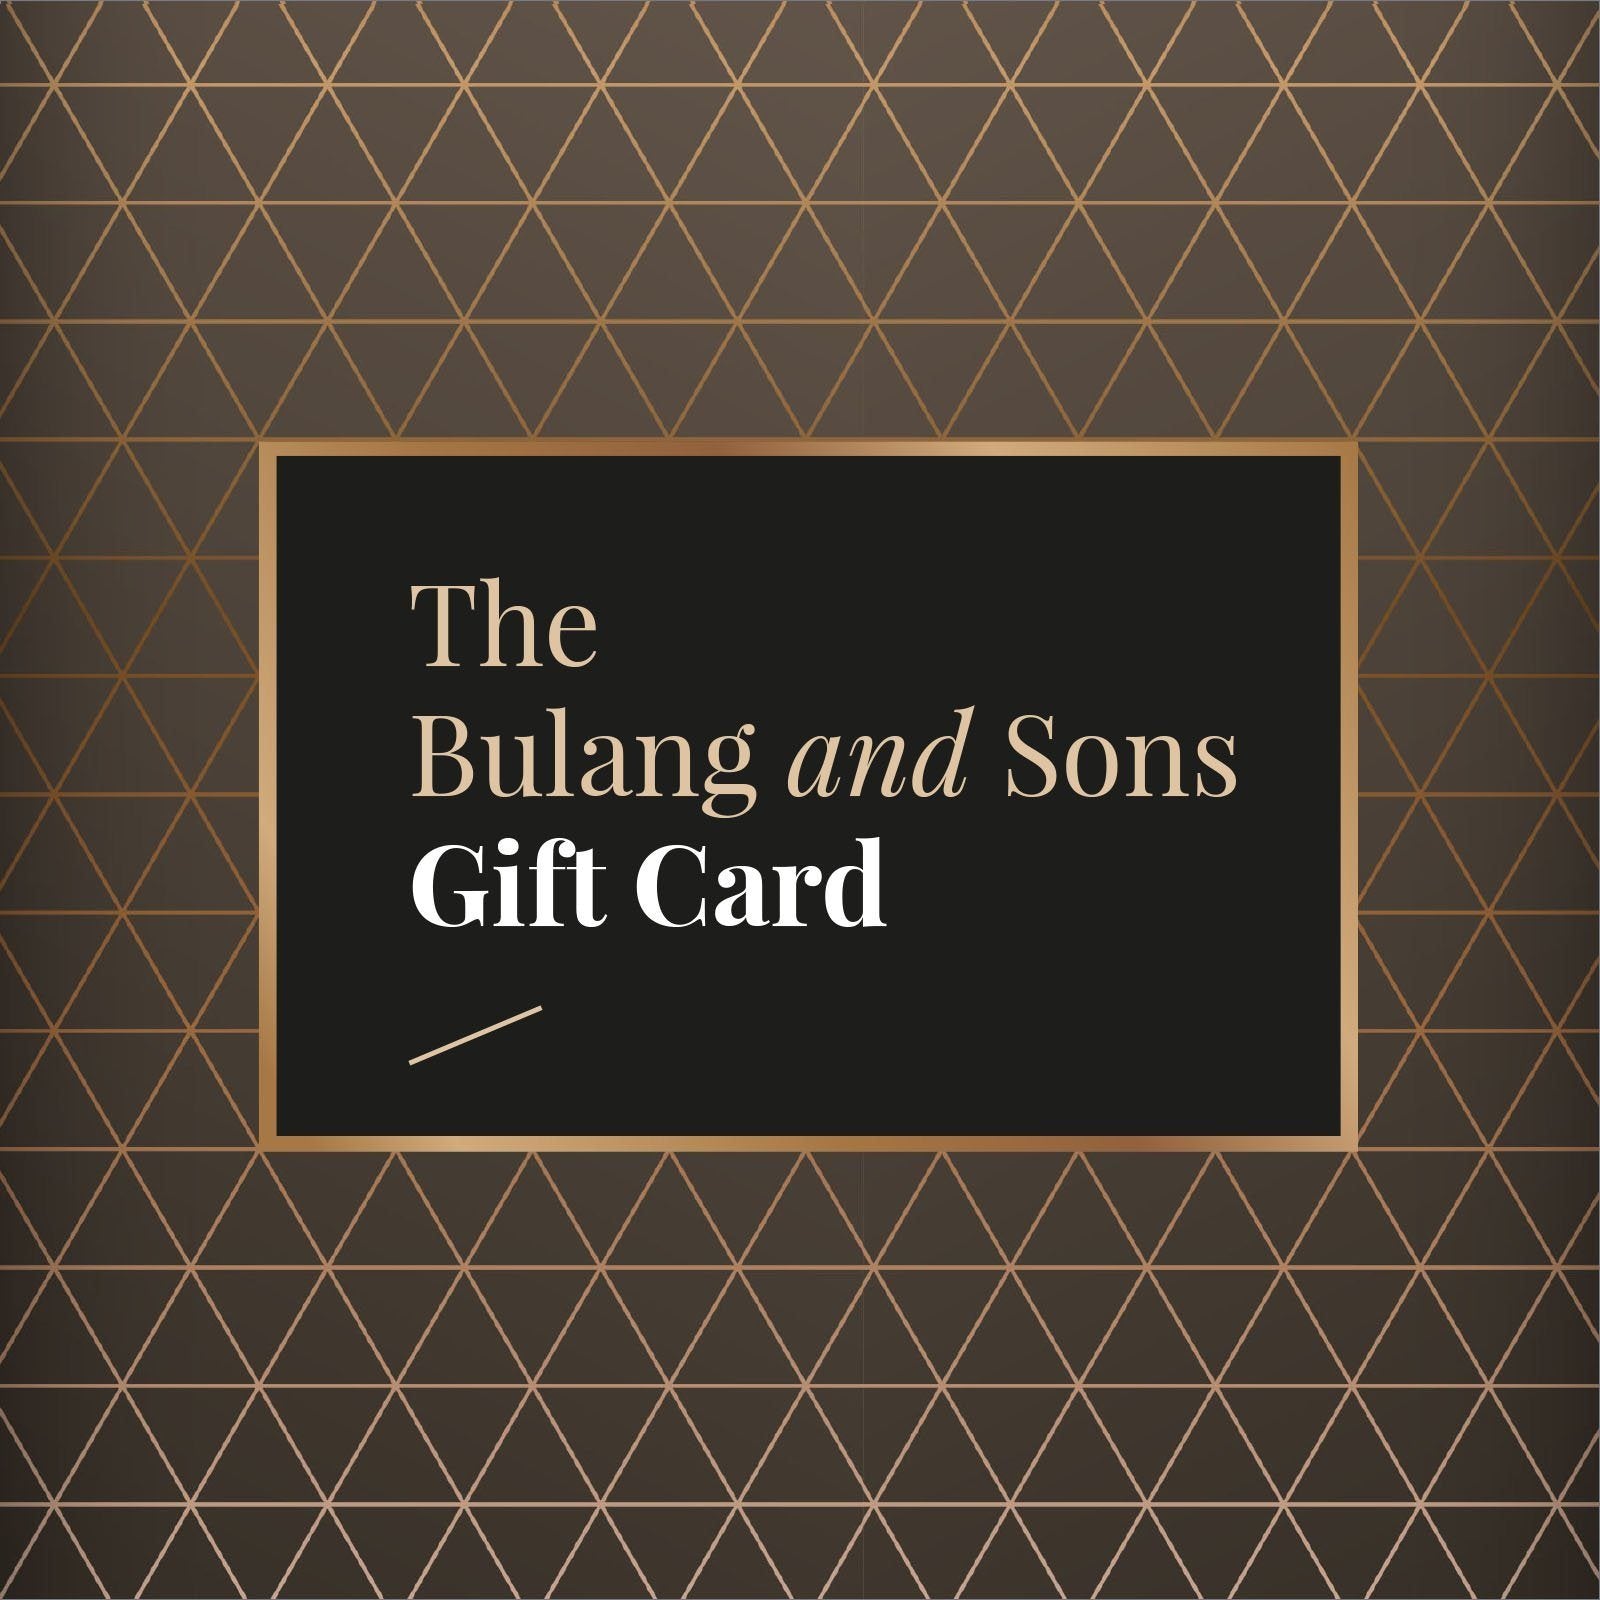 Bulang and sons Gift Card